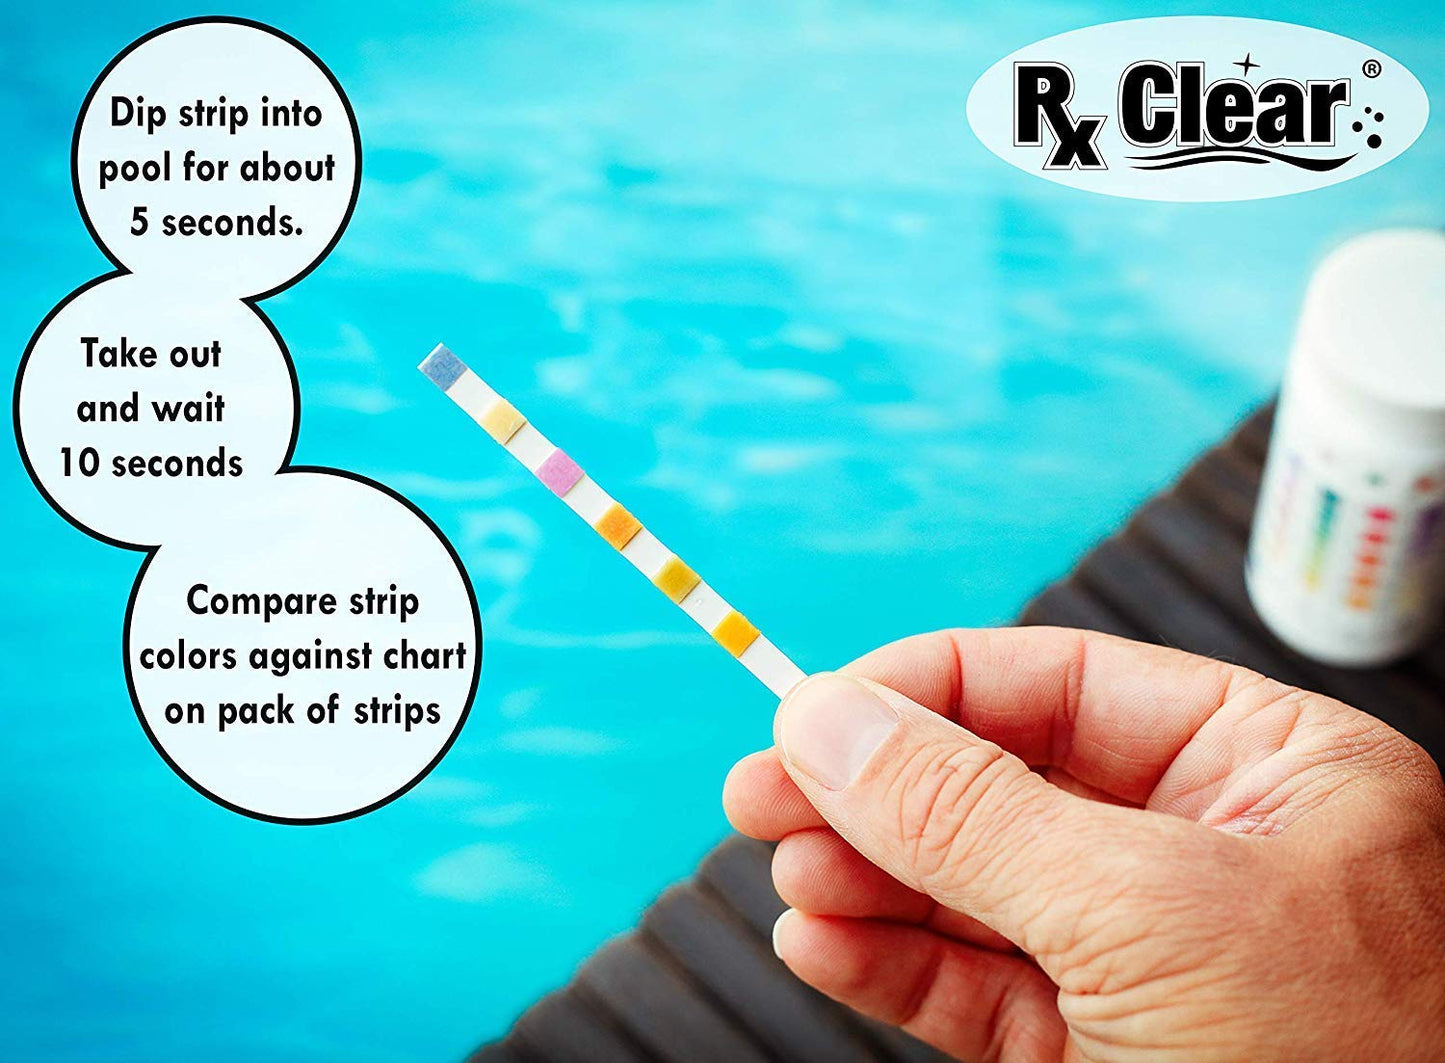 Rx Clear Comprimés de chlore emballés individuellement de 3 pouces | Un seau de 15 livres | Utiliser comme bactéricide, algicide et désinfectant dans les piscines et les spas | Dissolution lente et protection UV 15 lb